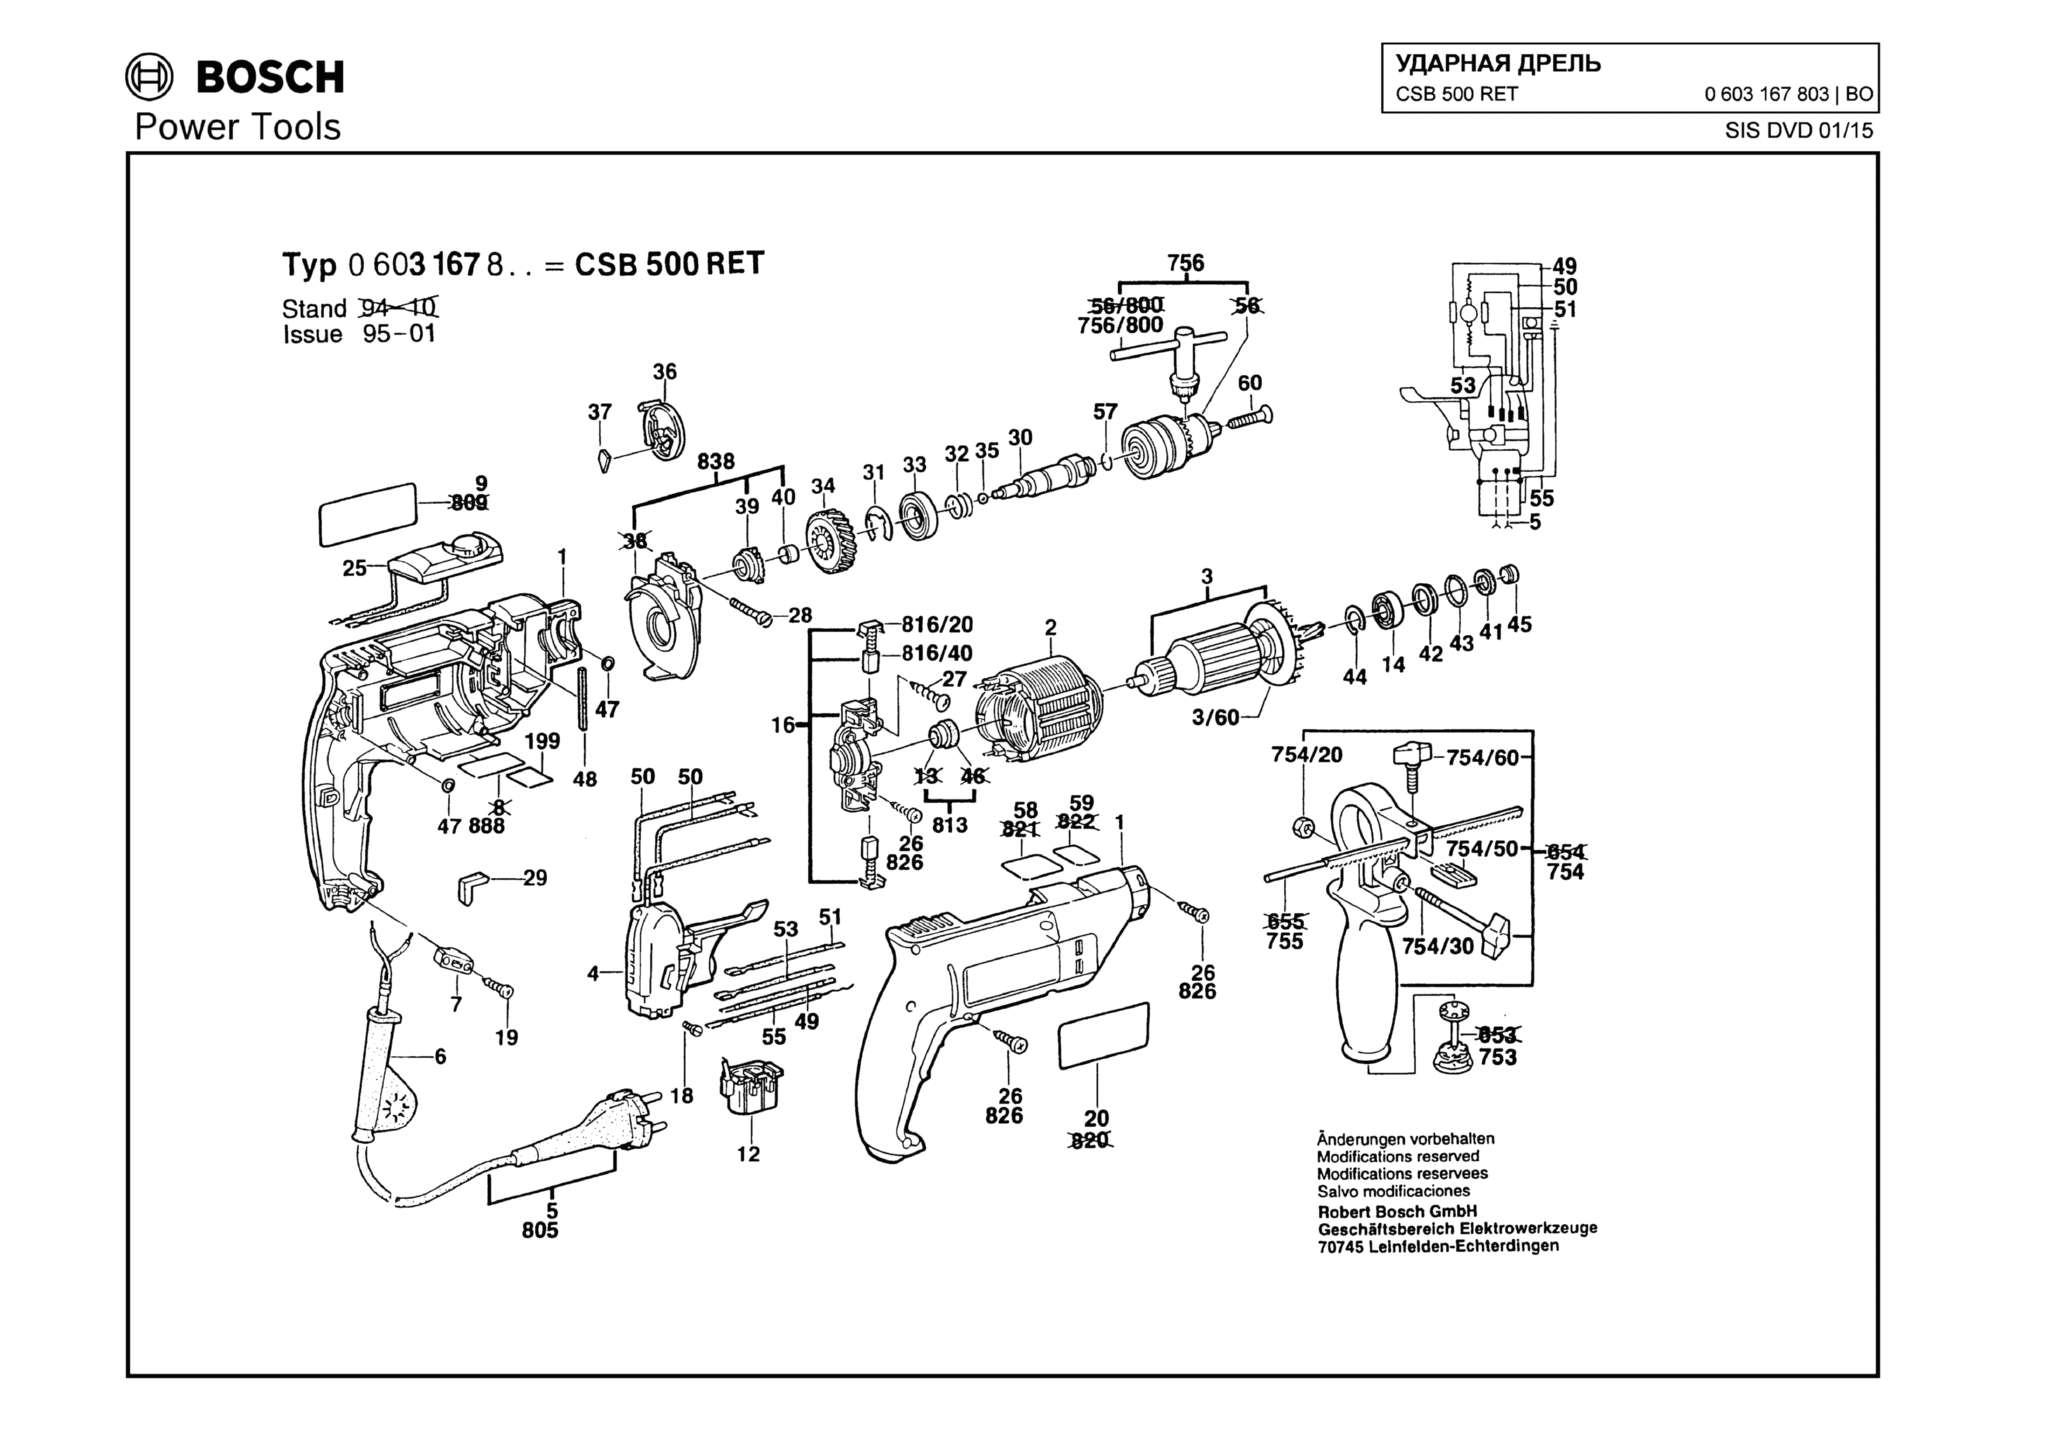 Запчасти, схема и деталировка Bosch CSB 500 RET (ТИП 0603167803)